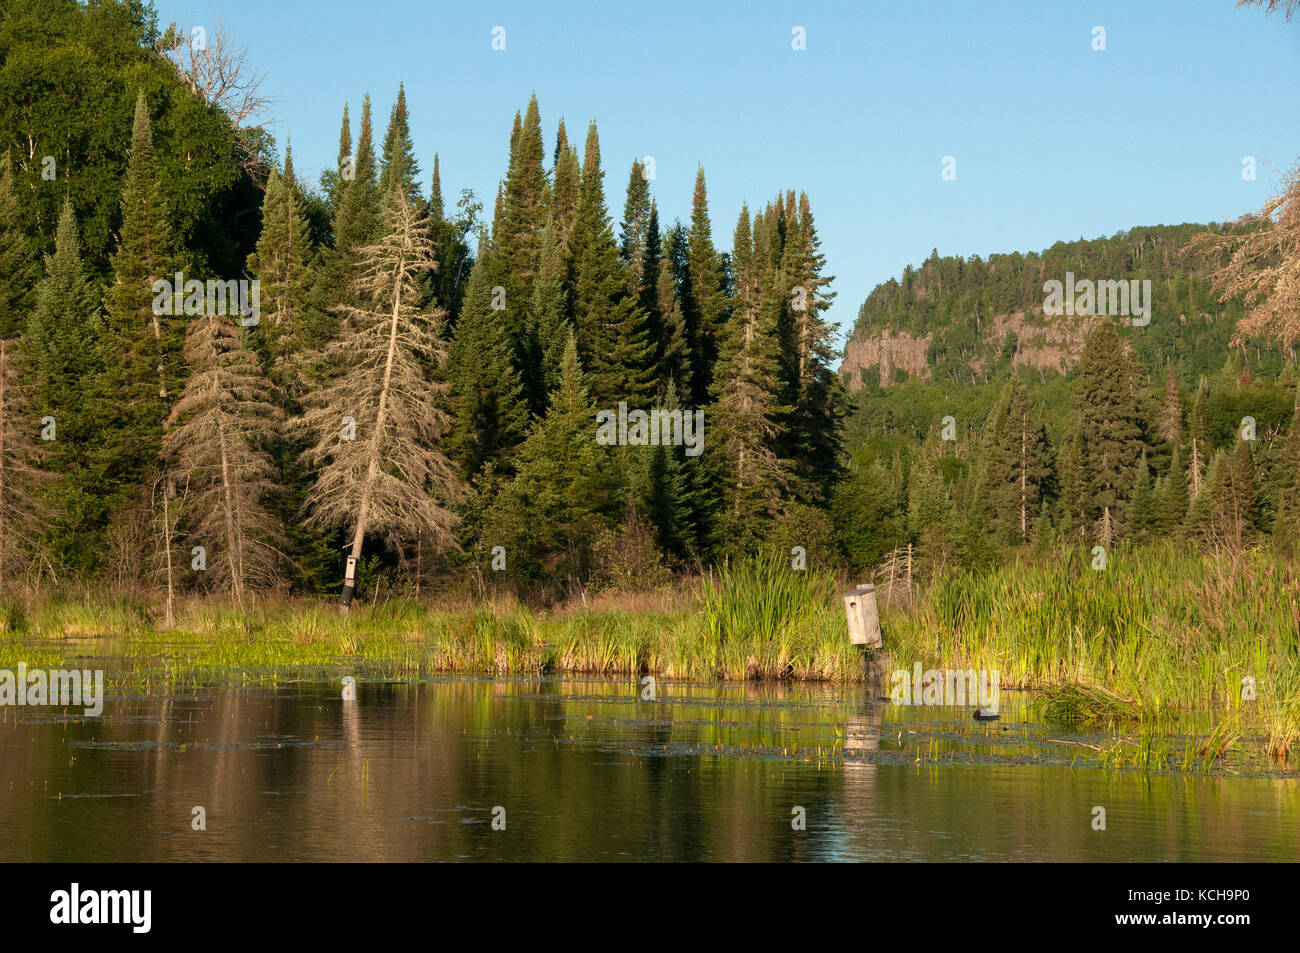 Nistkästen für Holz Enten auf einem Biber Teich im borealen Wald in der Nähe von Lake Superior, Nordamerika. Stockfoto